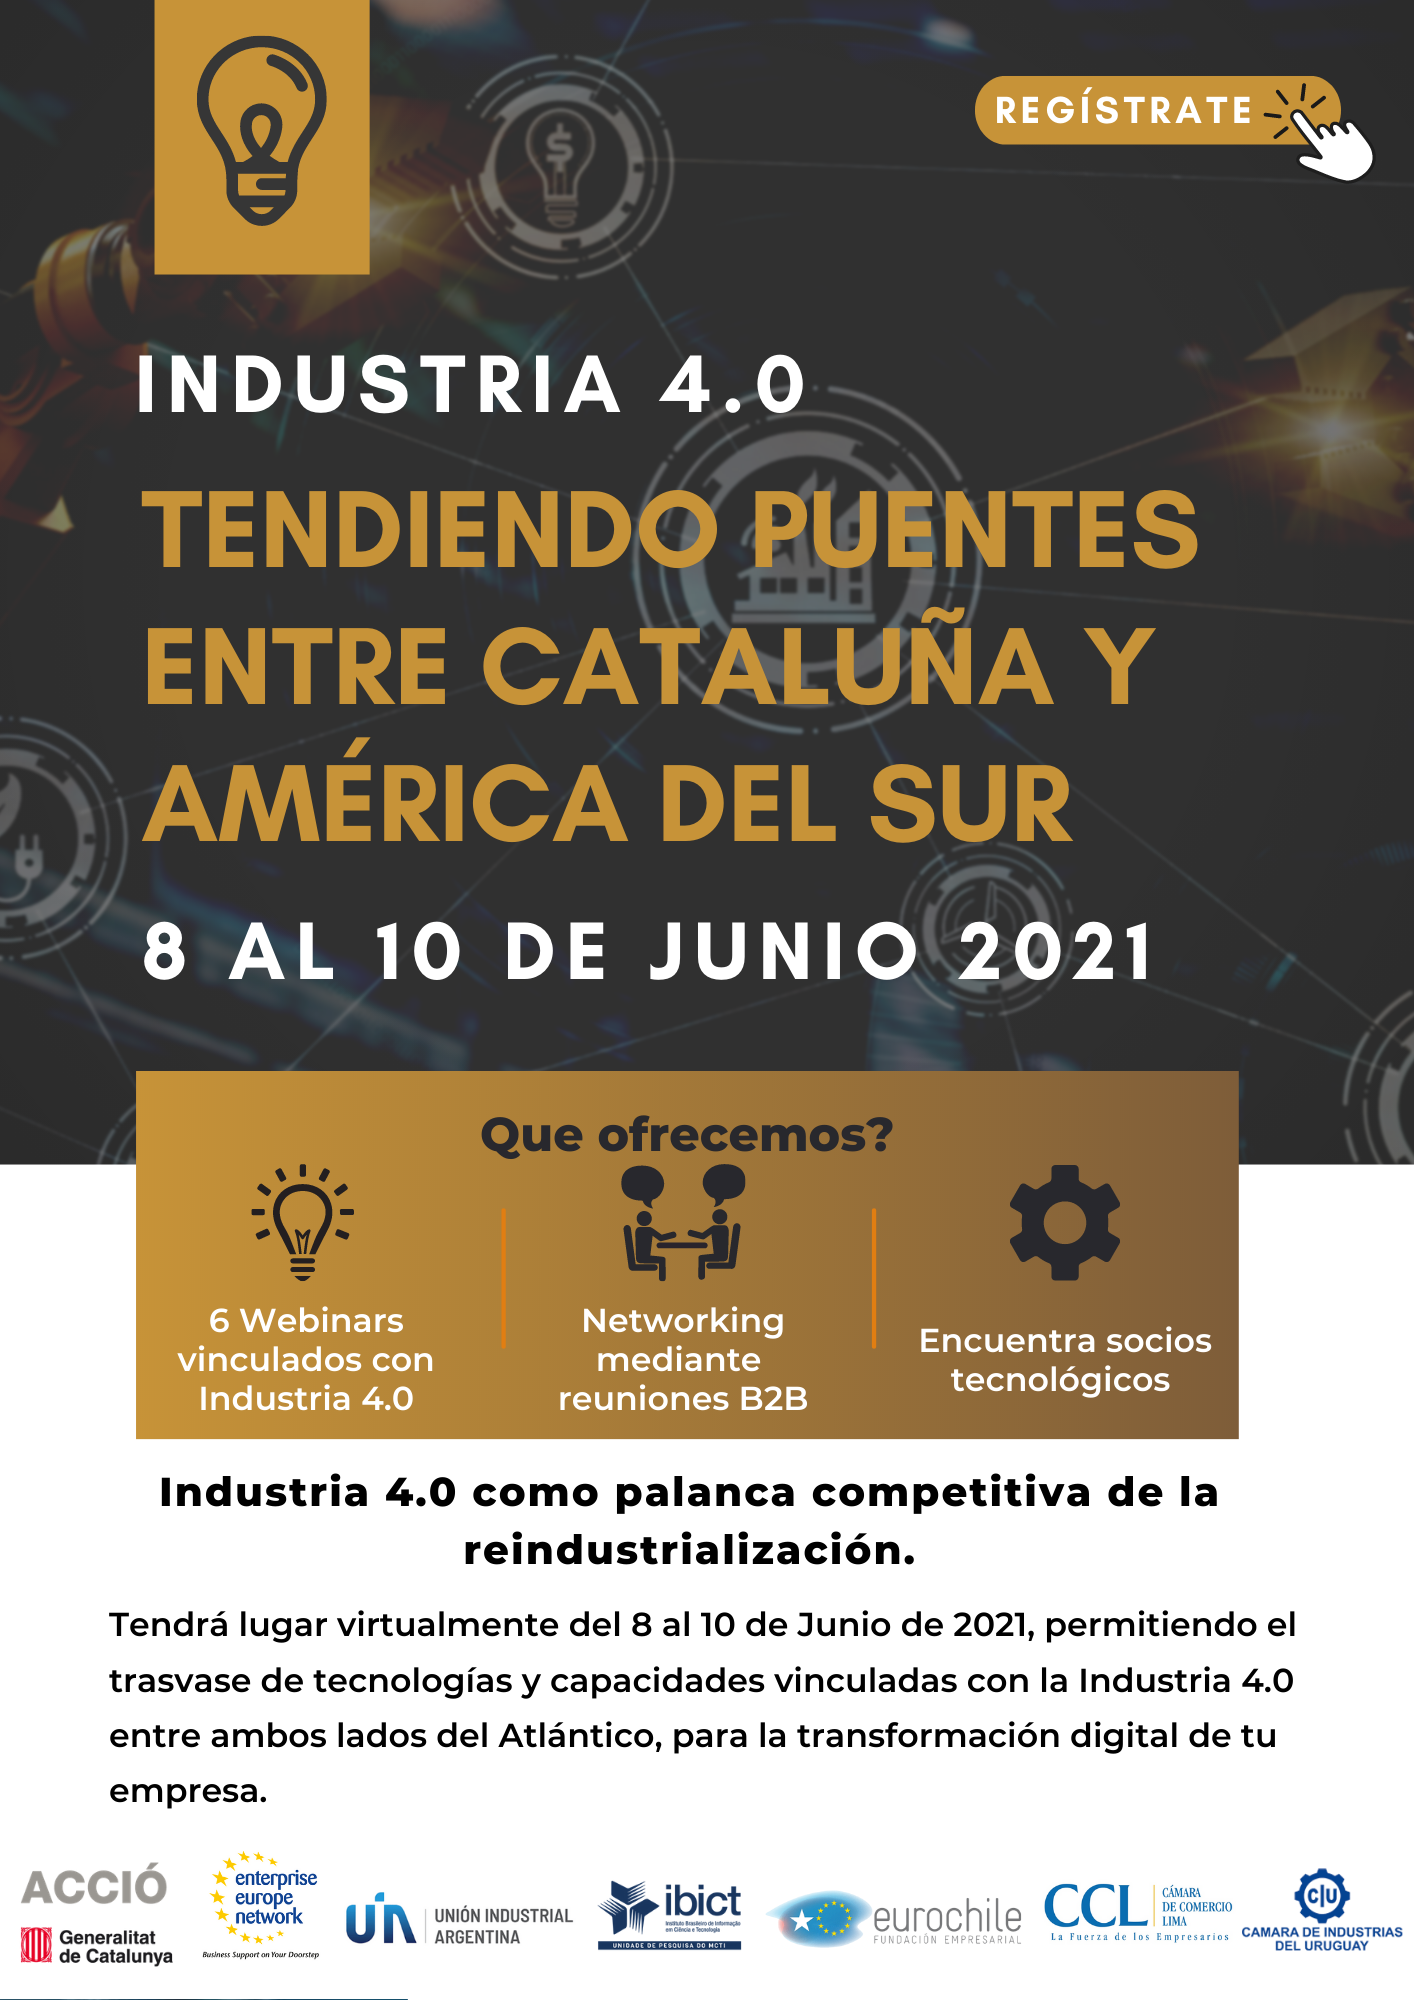 Industria 4.0: tendiendo puentes entre Cataluña y América del Sur